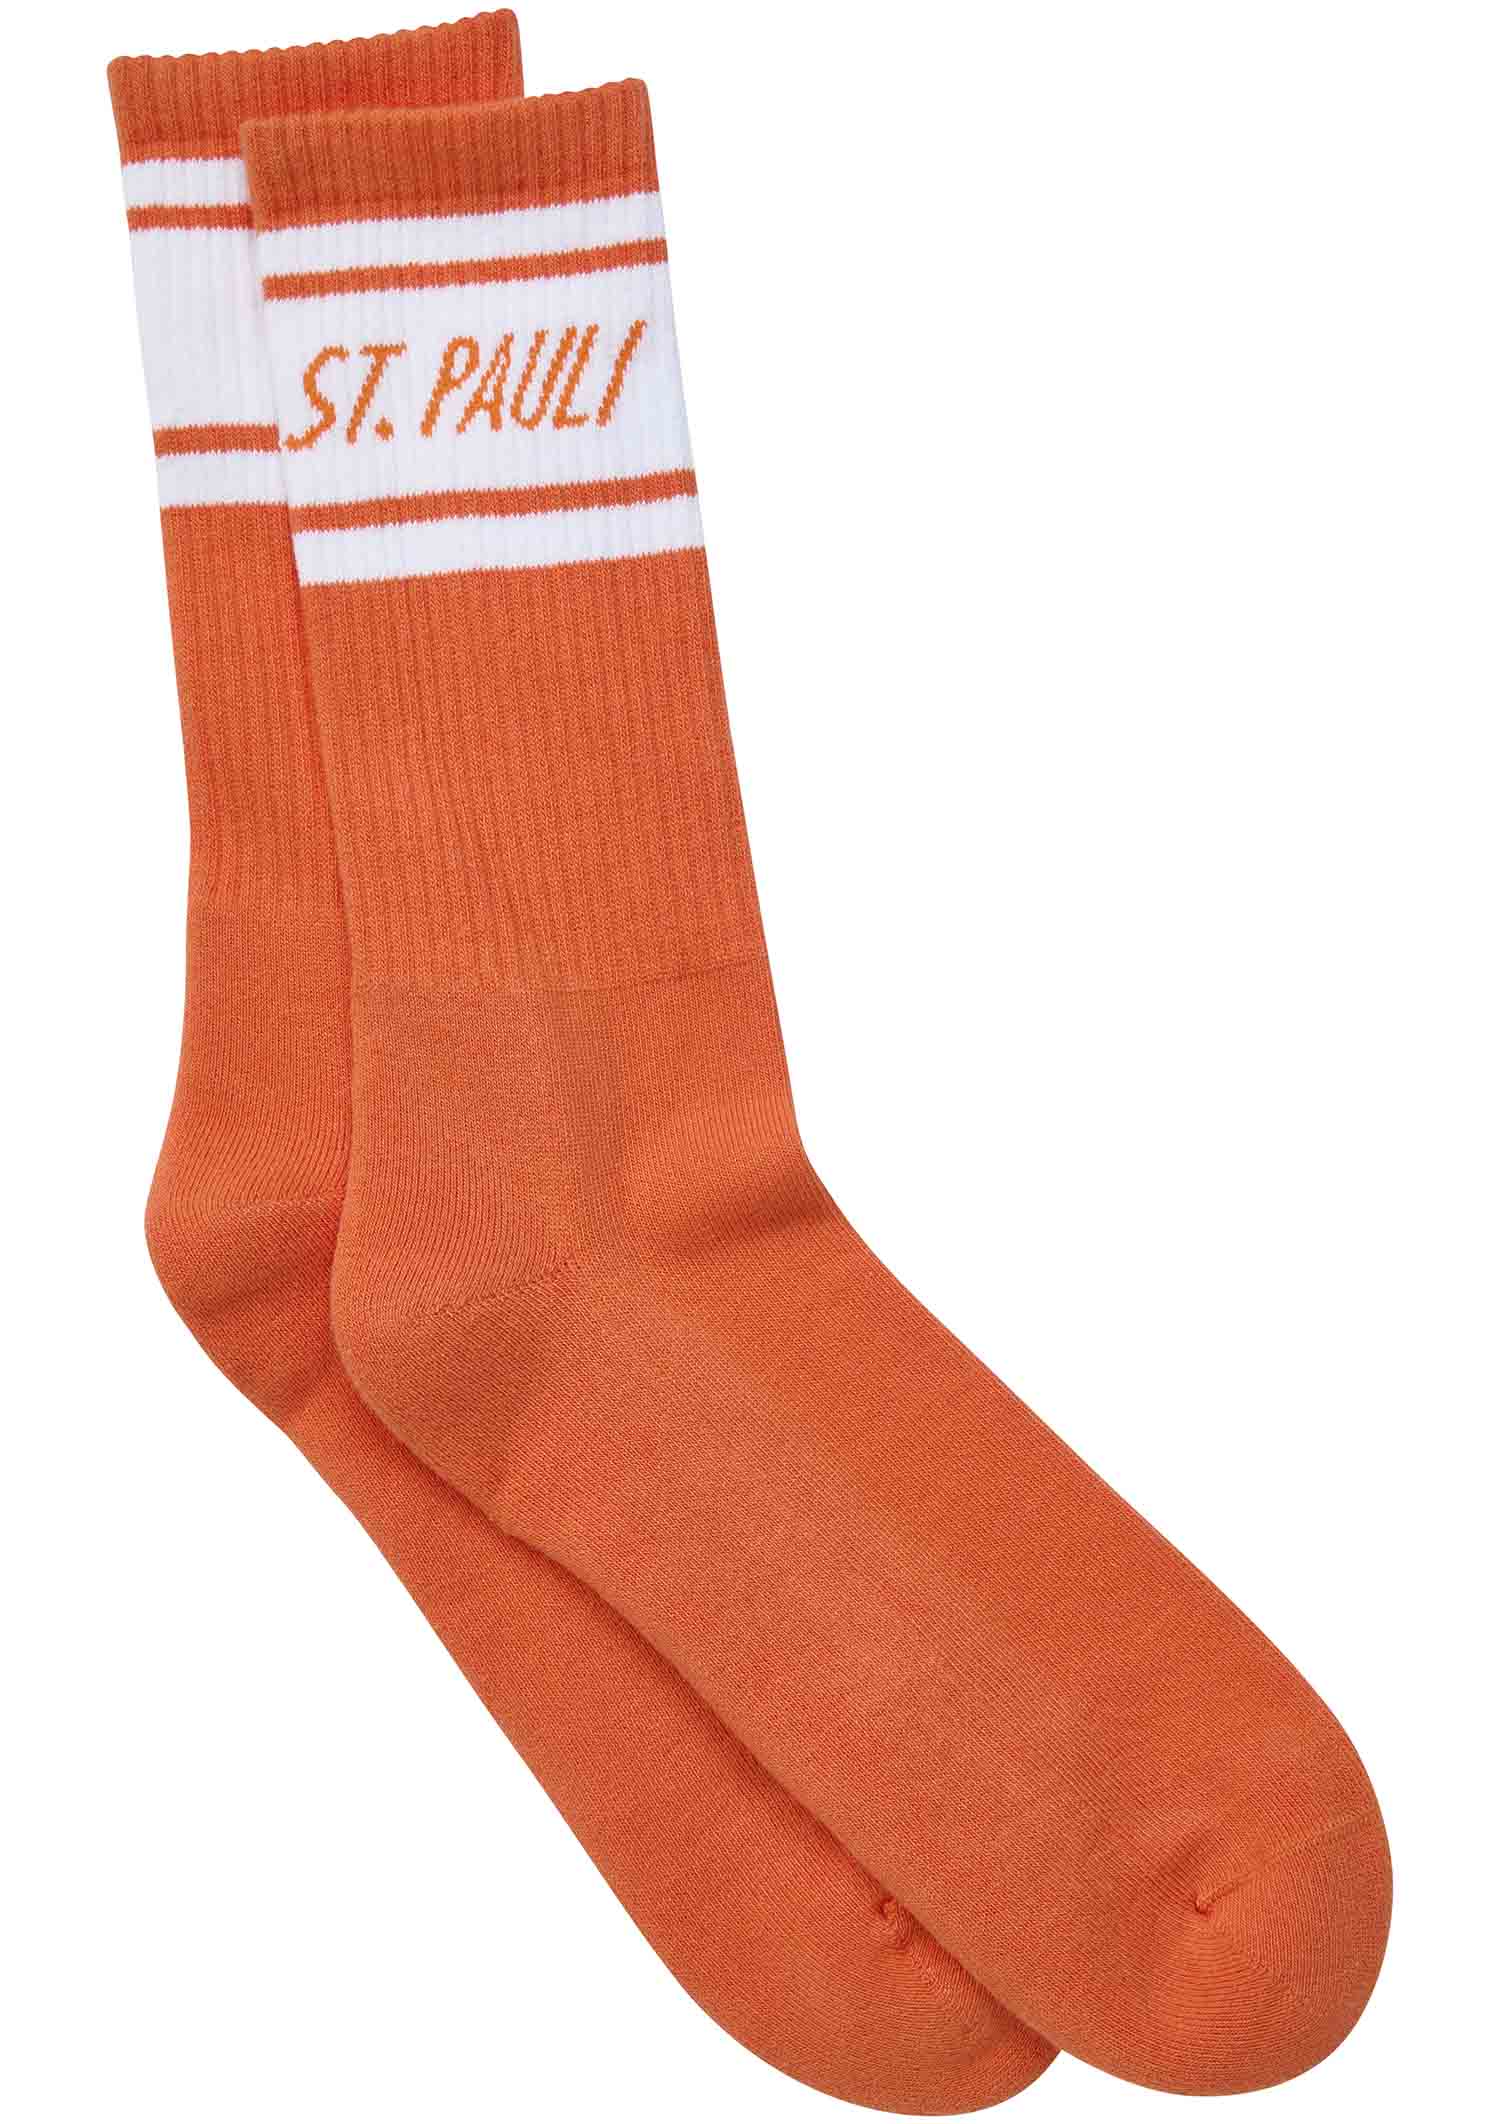 Socks "St. Pauli" - orange